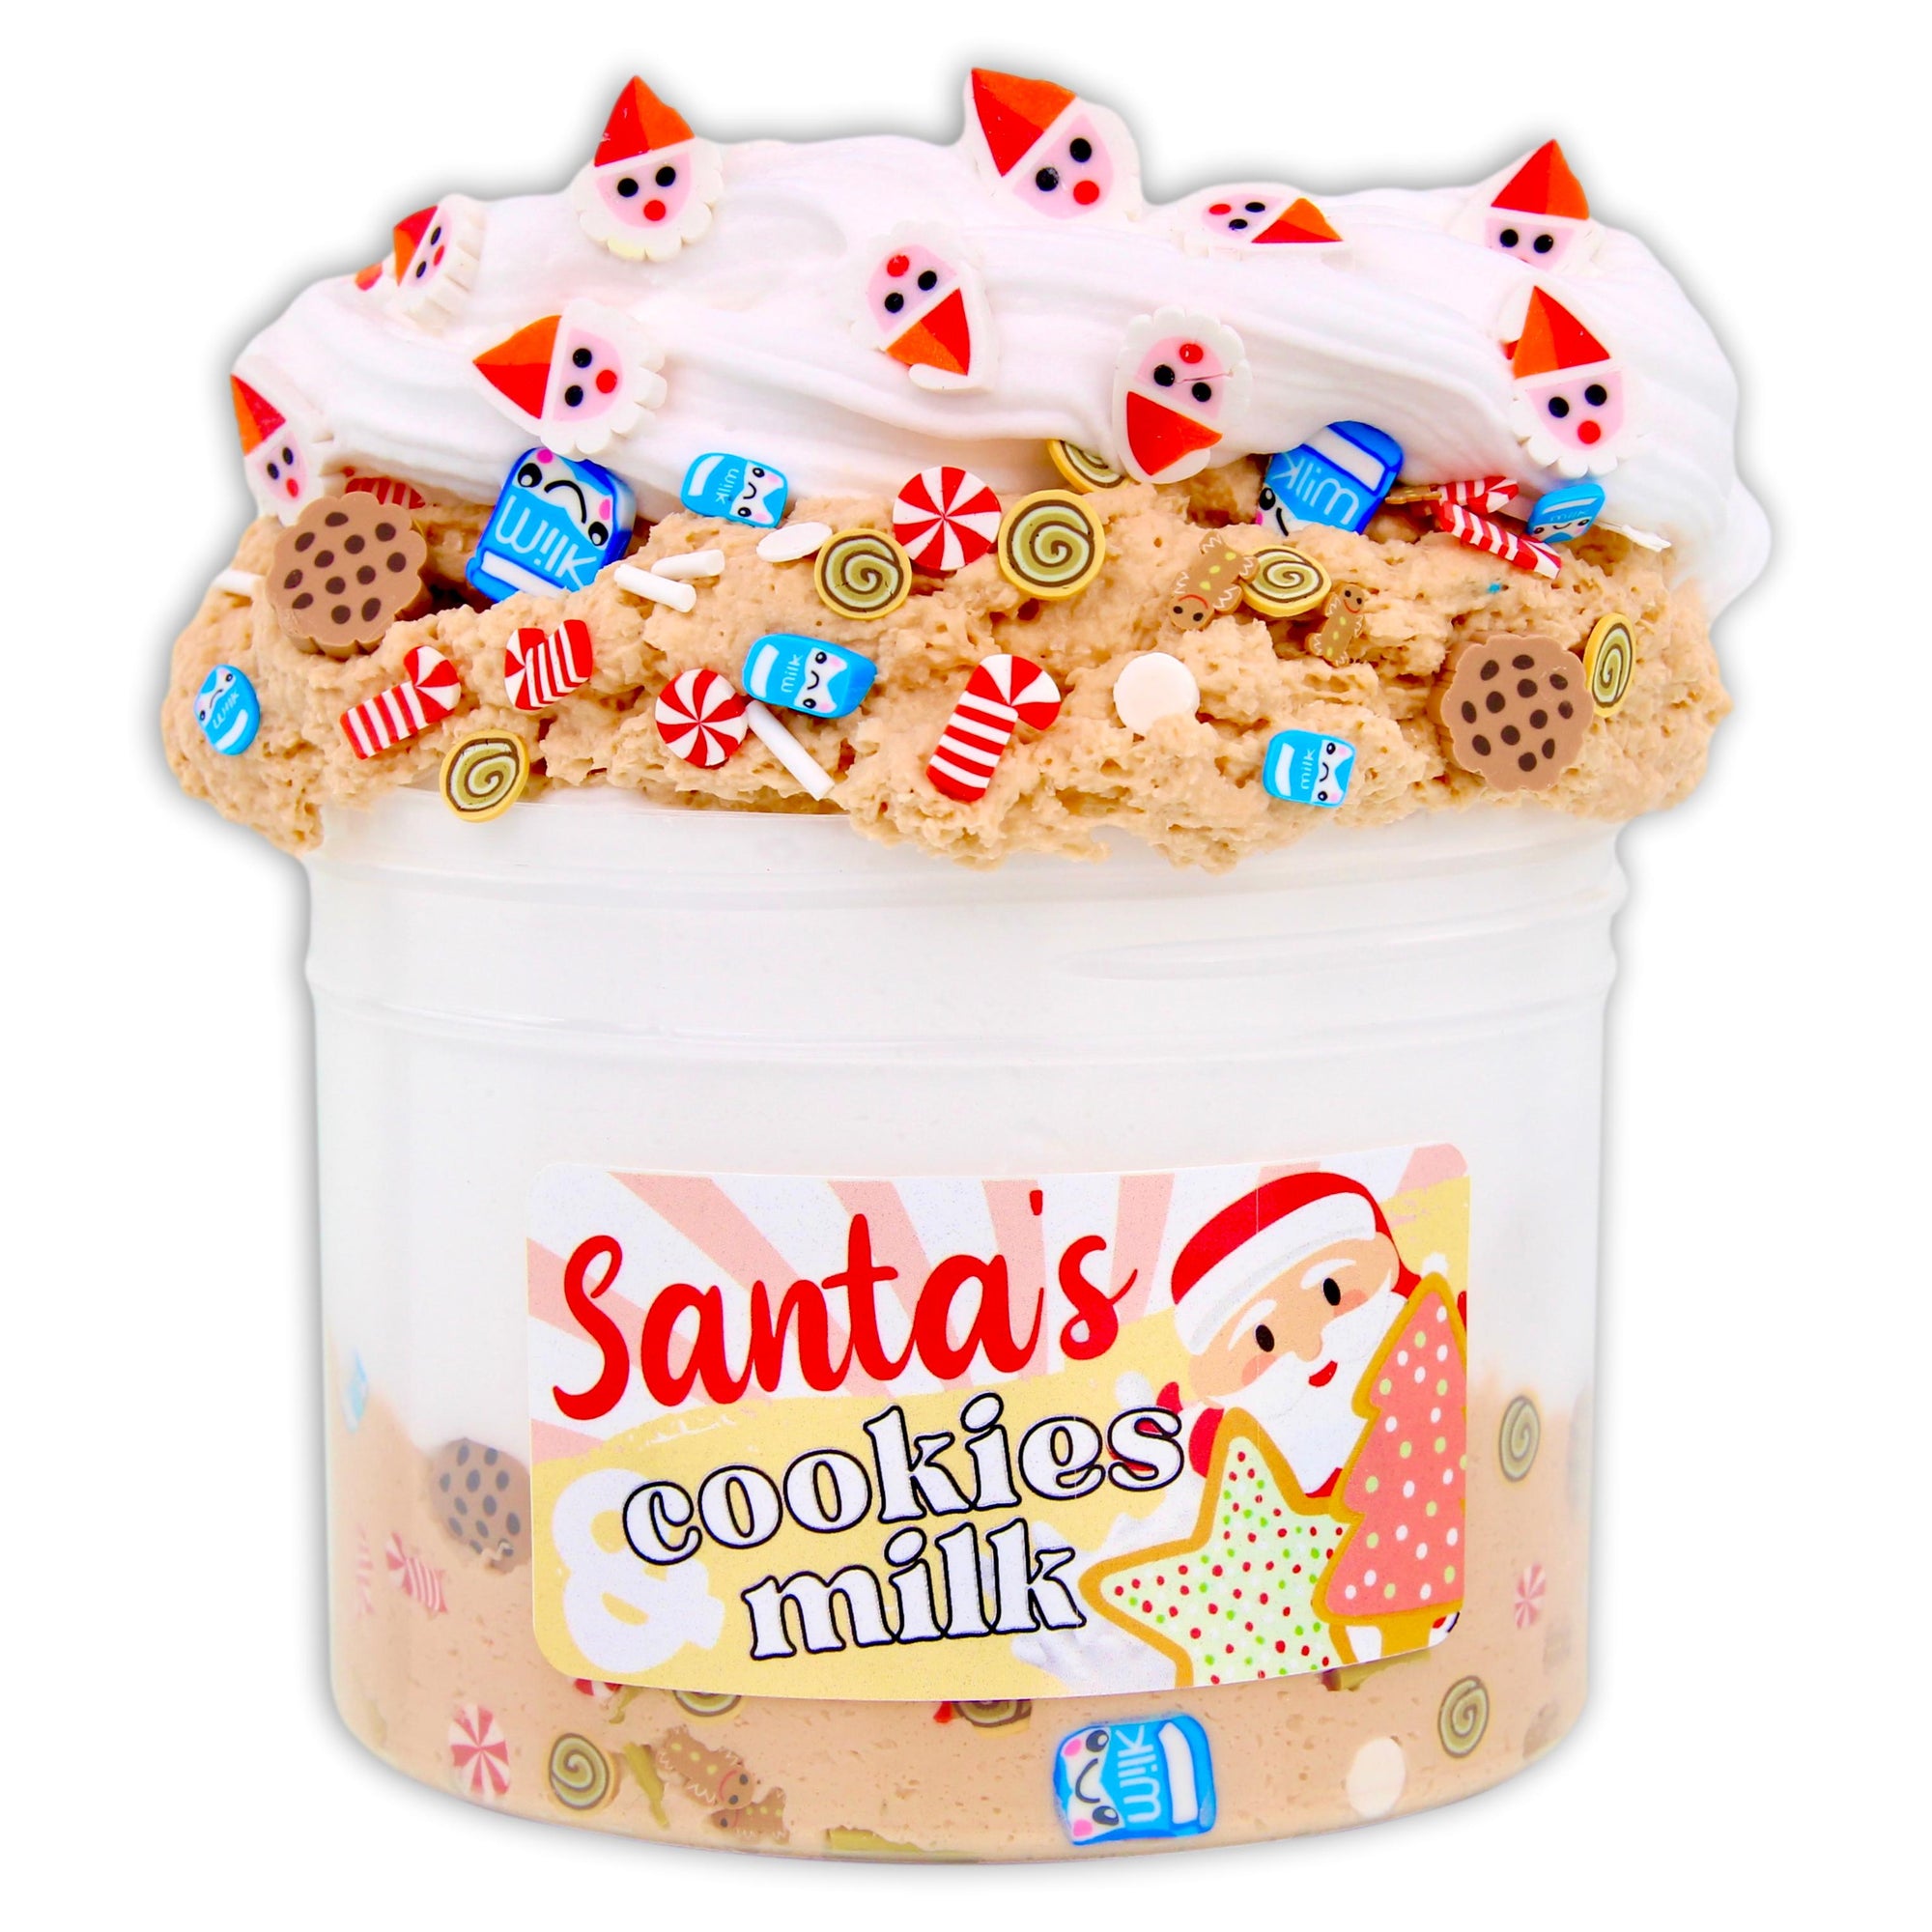 Santa's Cookies & Milk Hybrid Slime - Shop Christmas Slimes 